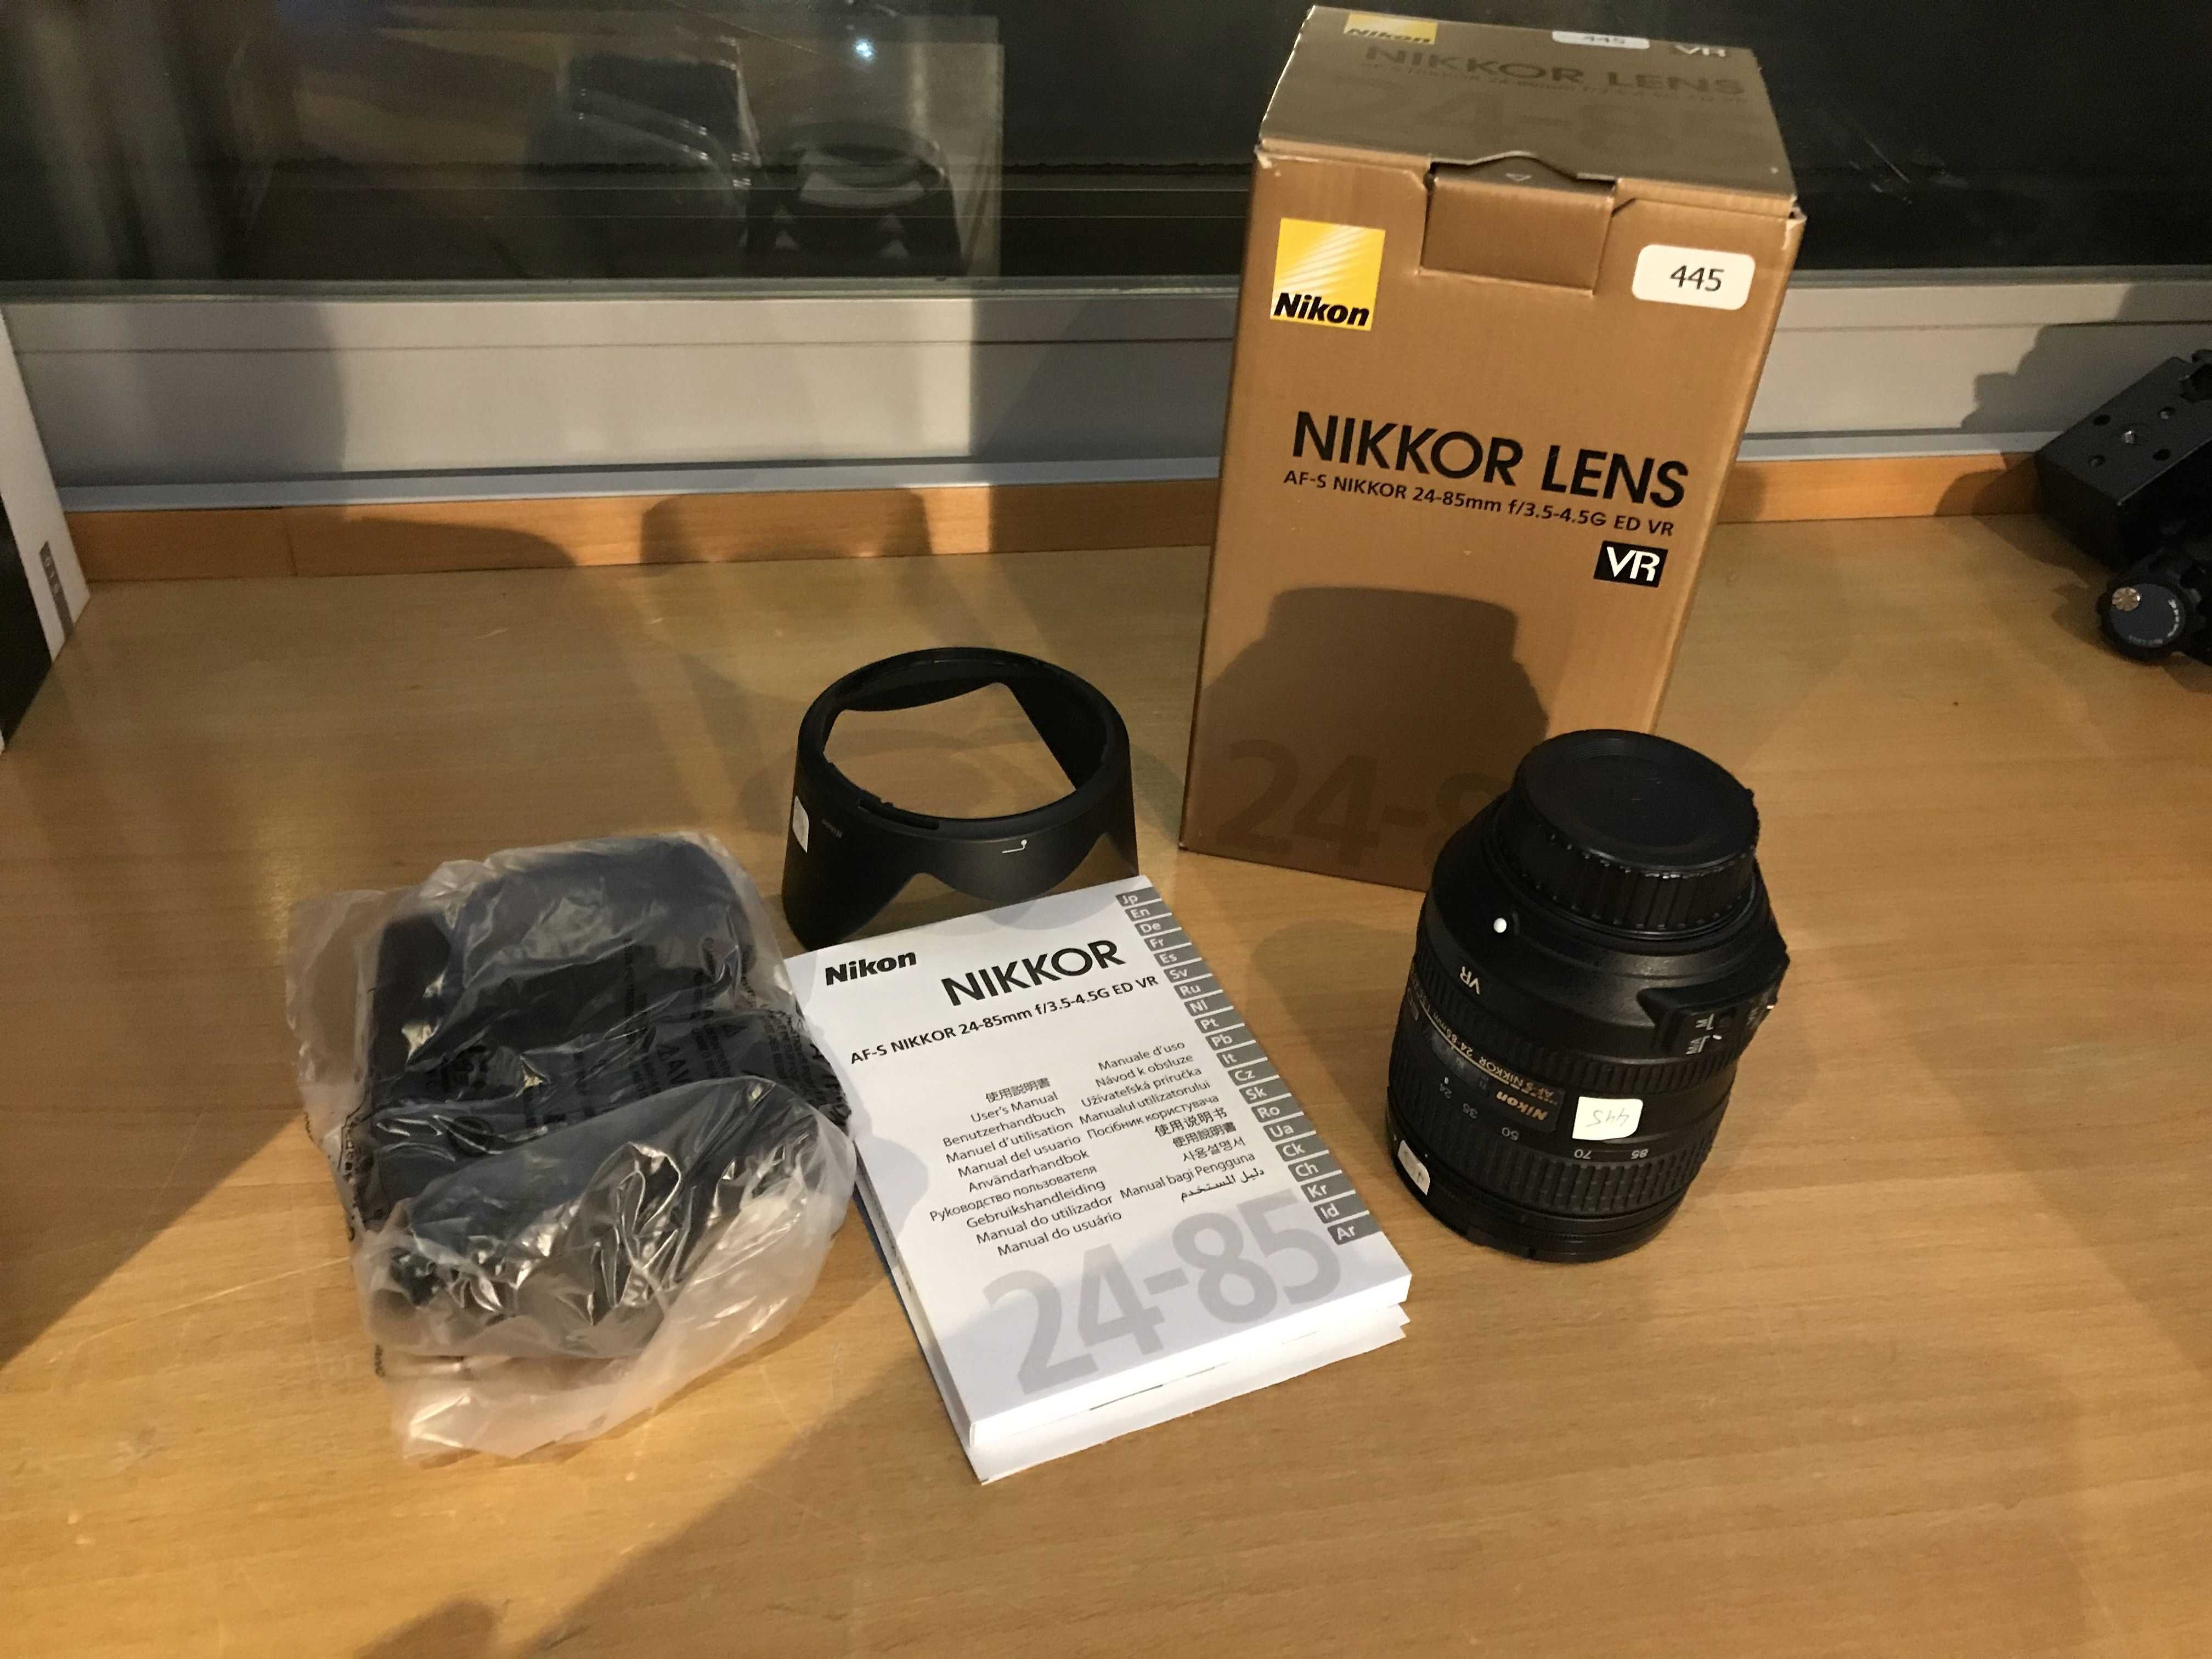 Lente/Objectiva Nikon AF-S NIKKOR 24-85mm f/3.5-4.5G ED VR (445)